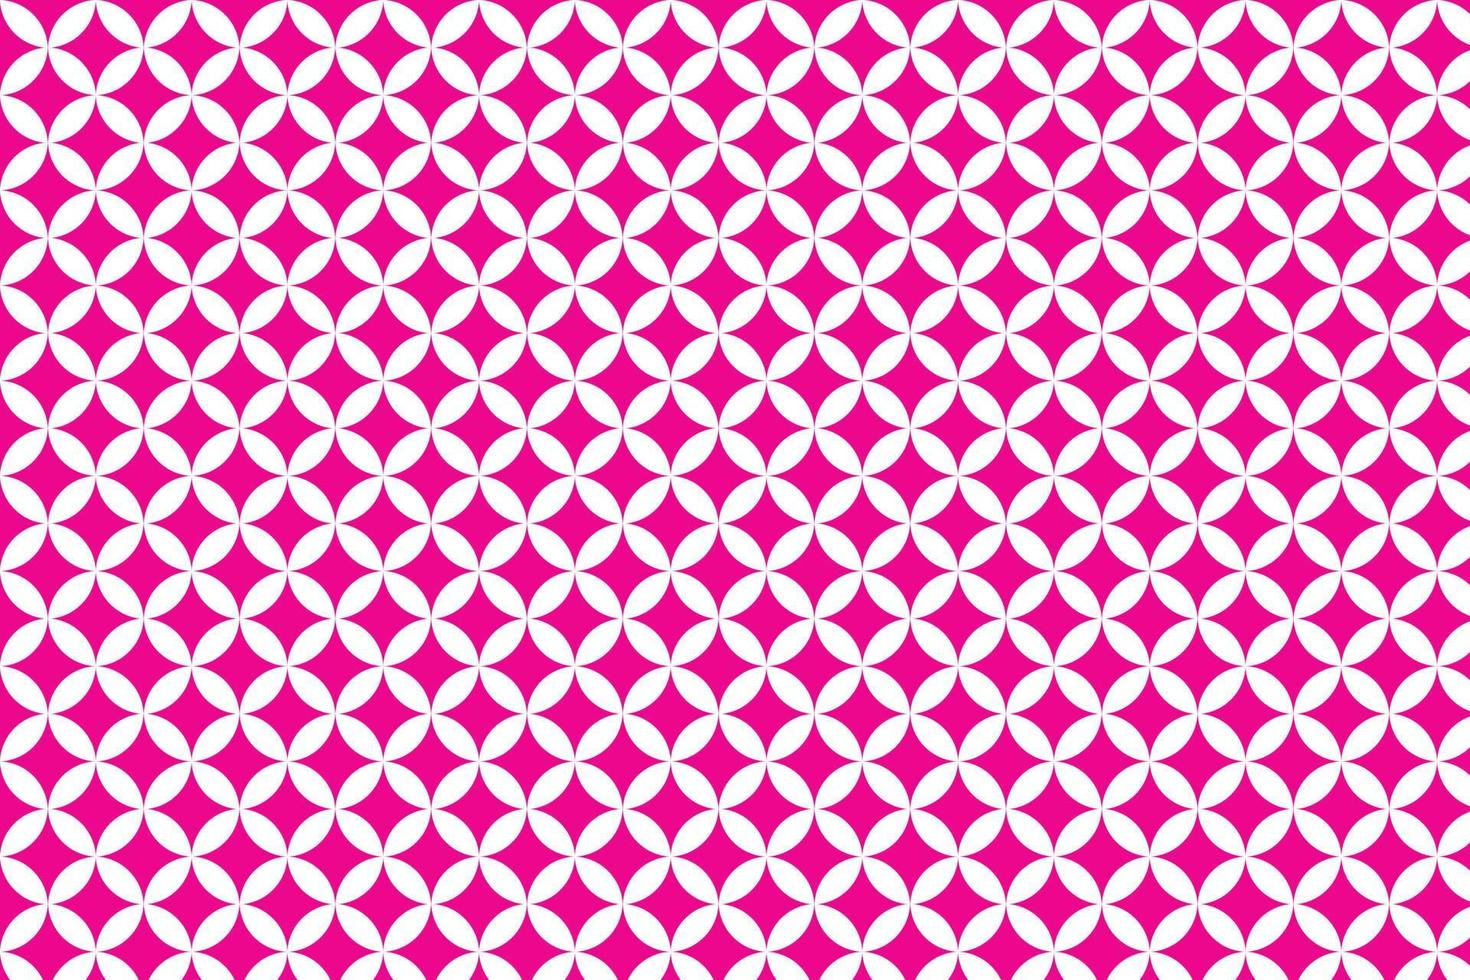 abstract naadloos wit bloem patroon ontwerp met roze achtergrond. vector